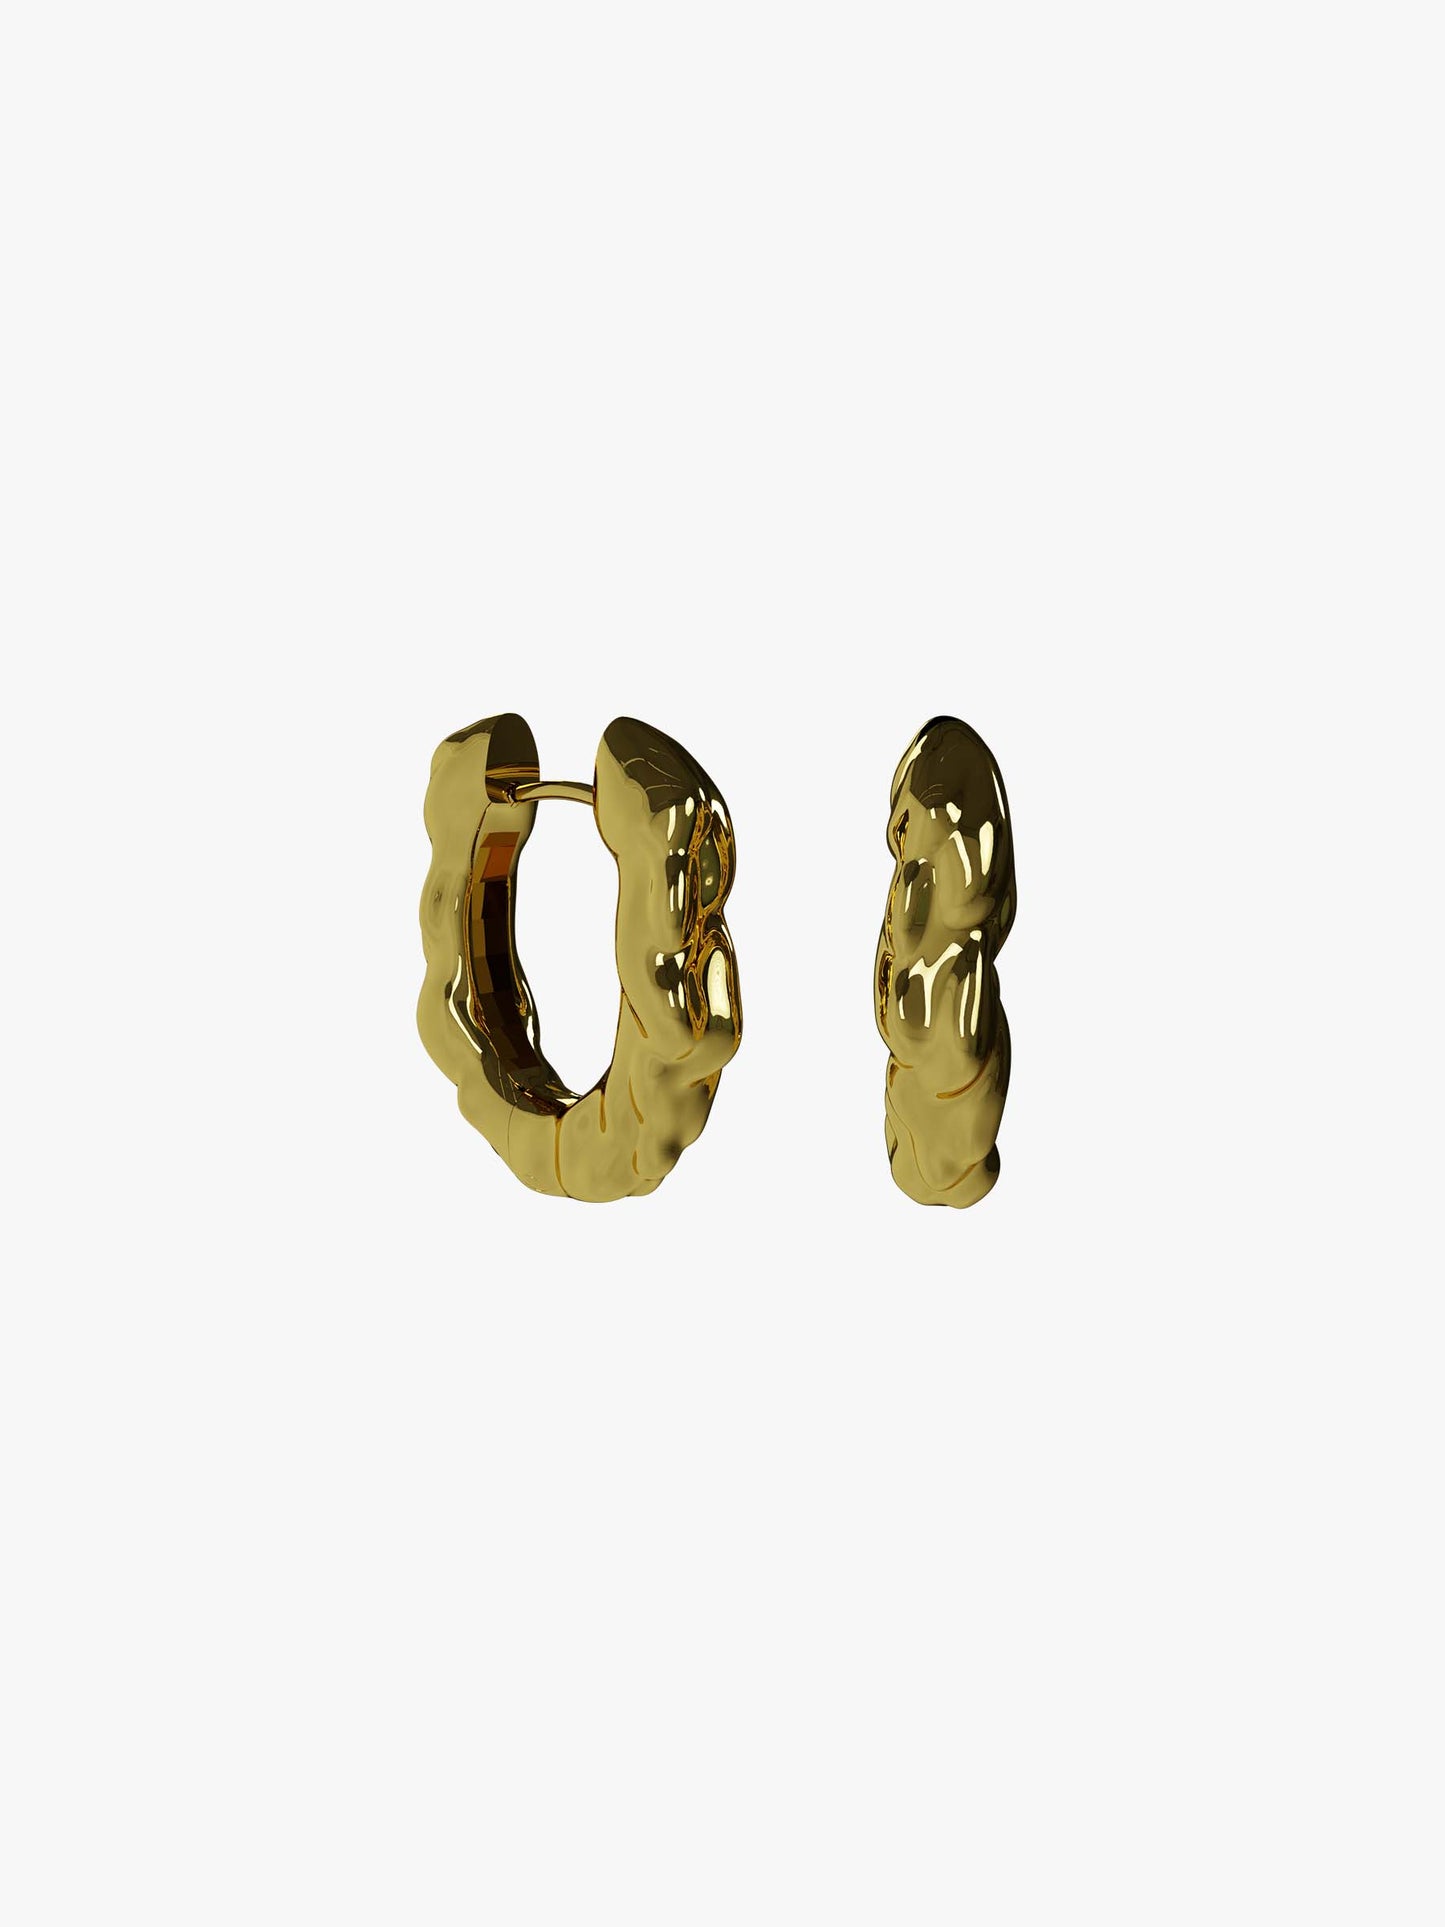 Nus gold earring (pair)